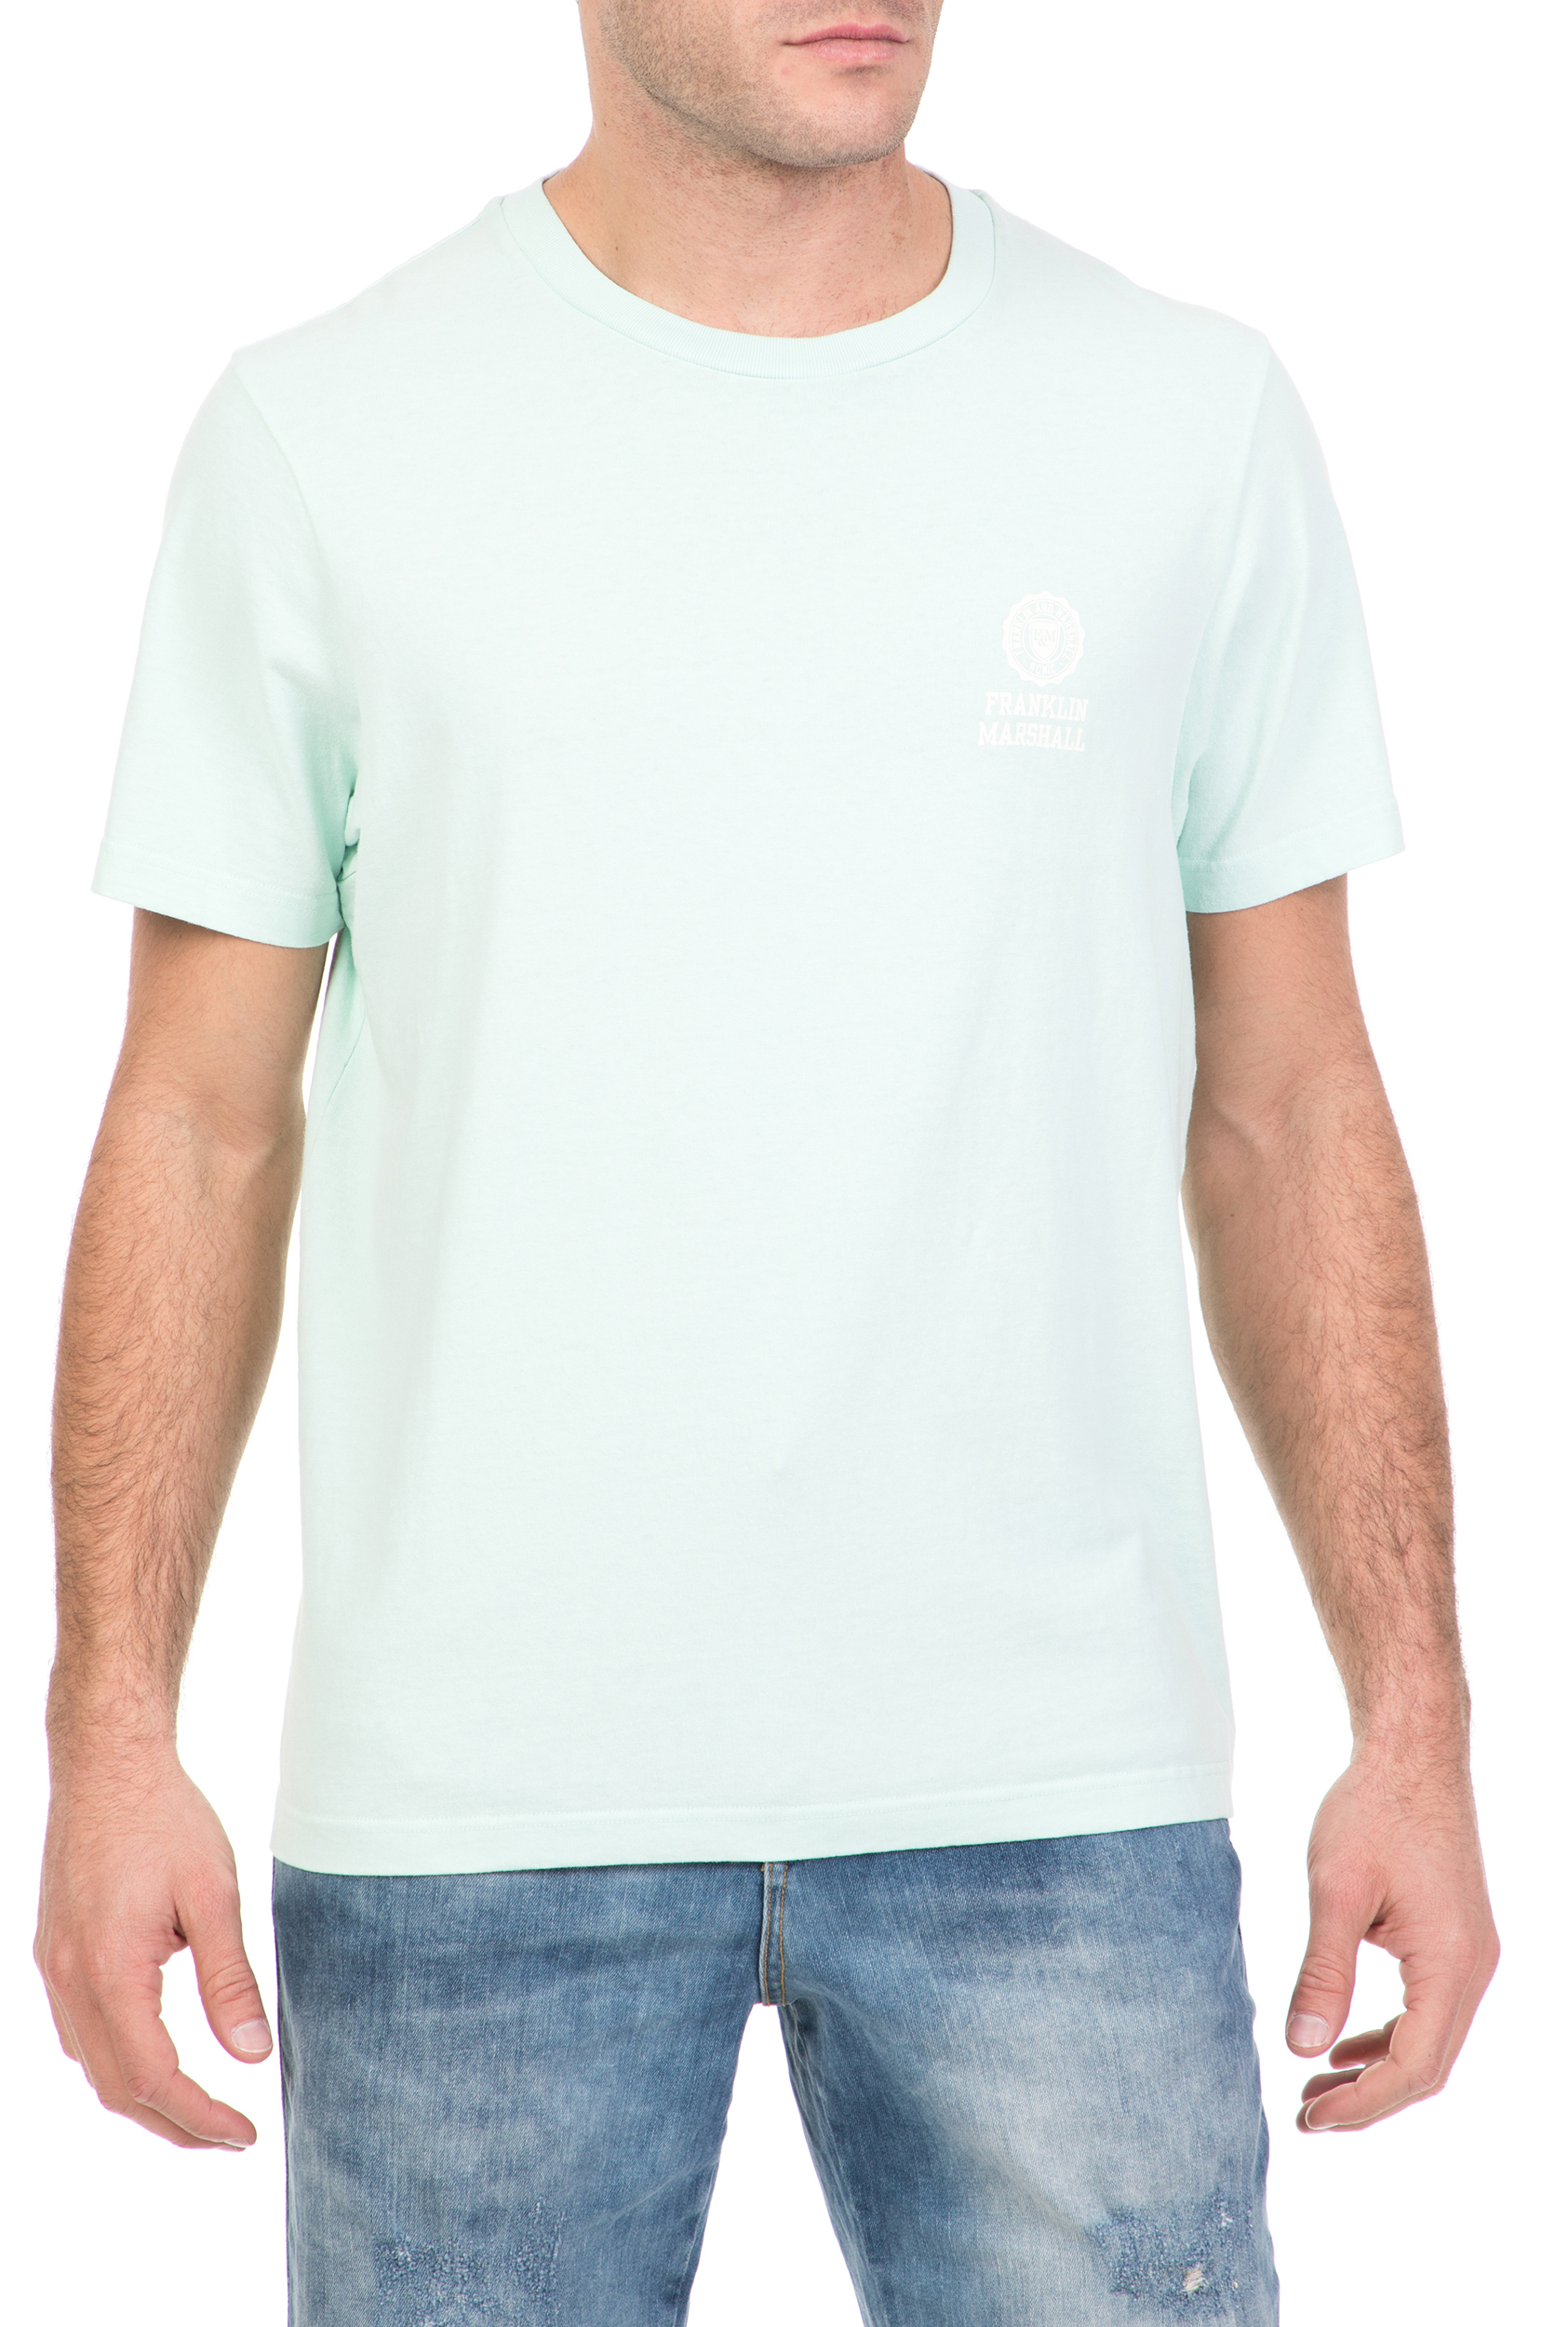 Ανδρικά/Ρούχα/Μπλούζες/Κοντομάνικες FRANKLIN & MARSHALL - Ανδρική κοντομάνικη μπλούζα FRANKLIN & MARSHALL ανοιχτό πράσινο